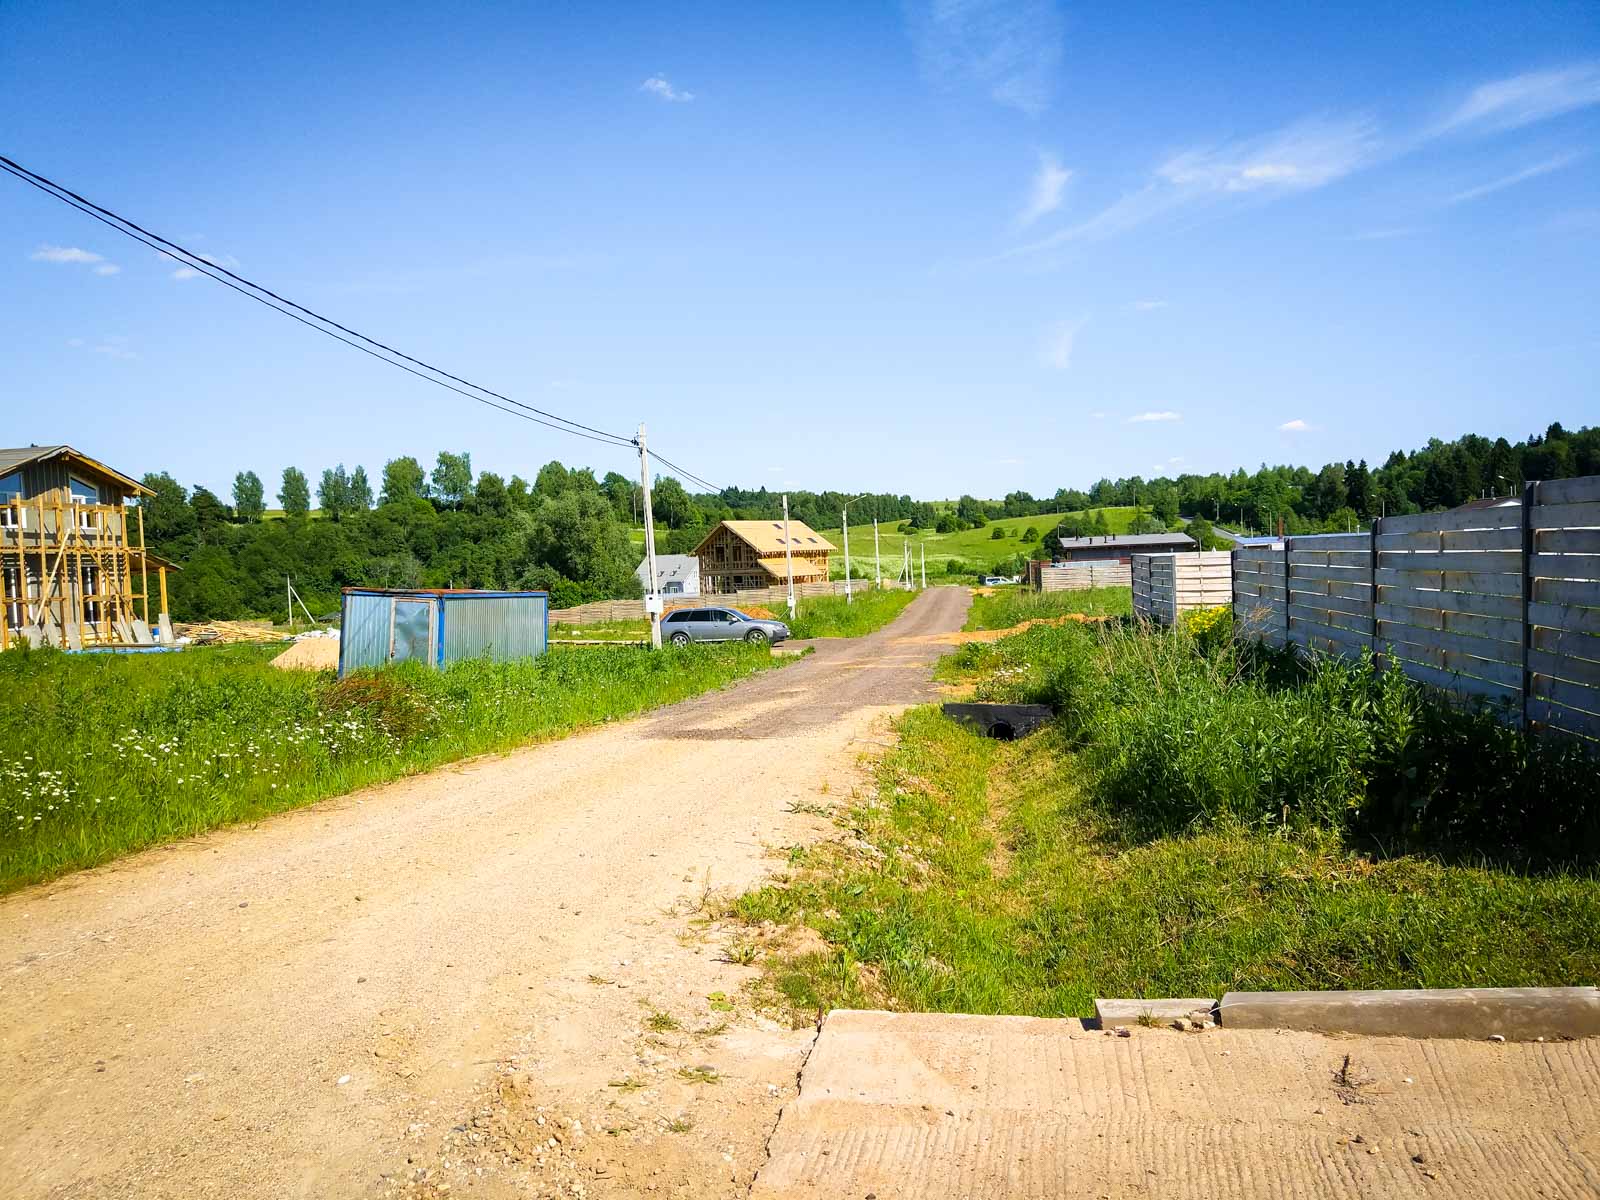 коттеджи и земельные участки в поселке Речная долина, Дмитров, в 2018 году - 62